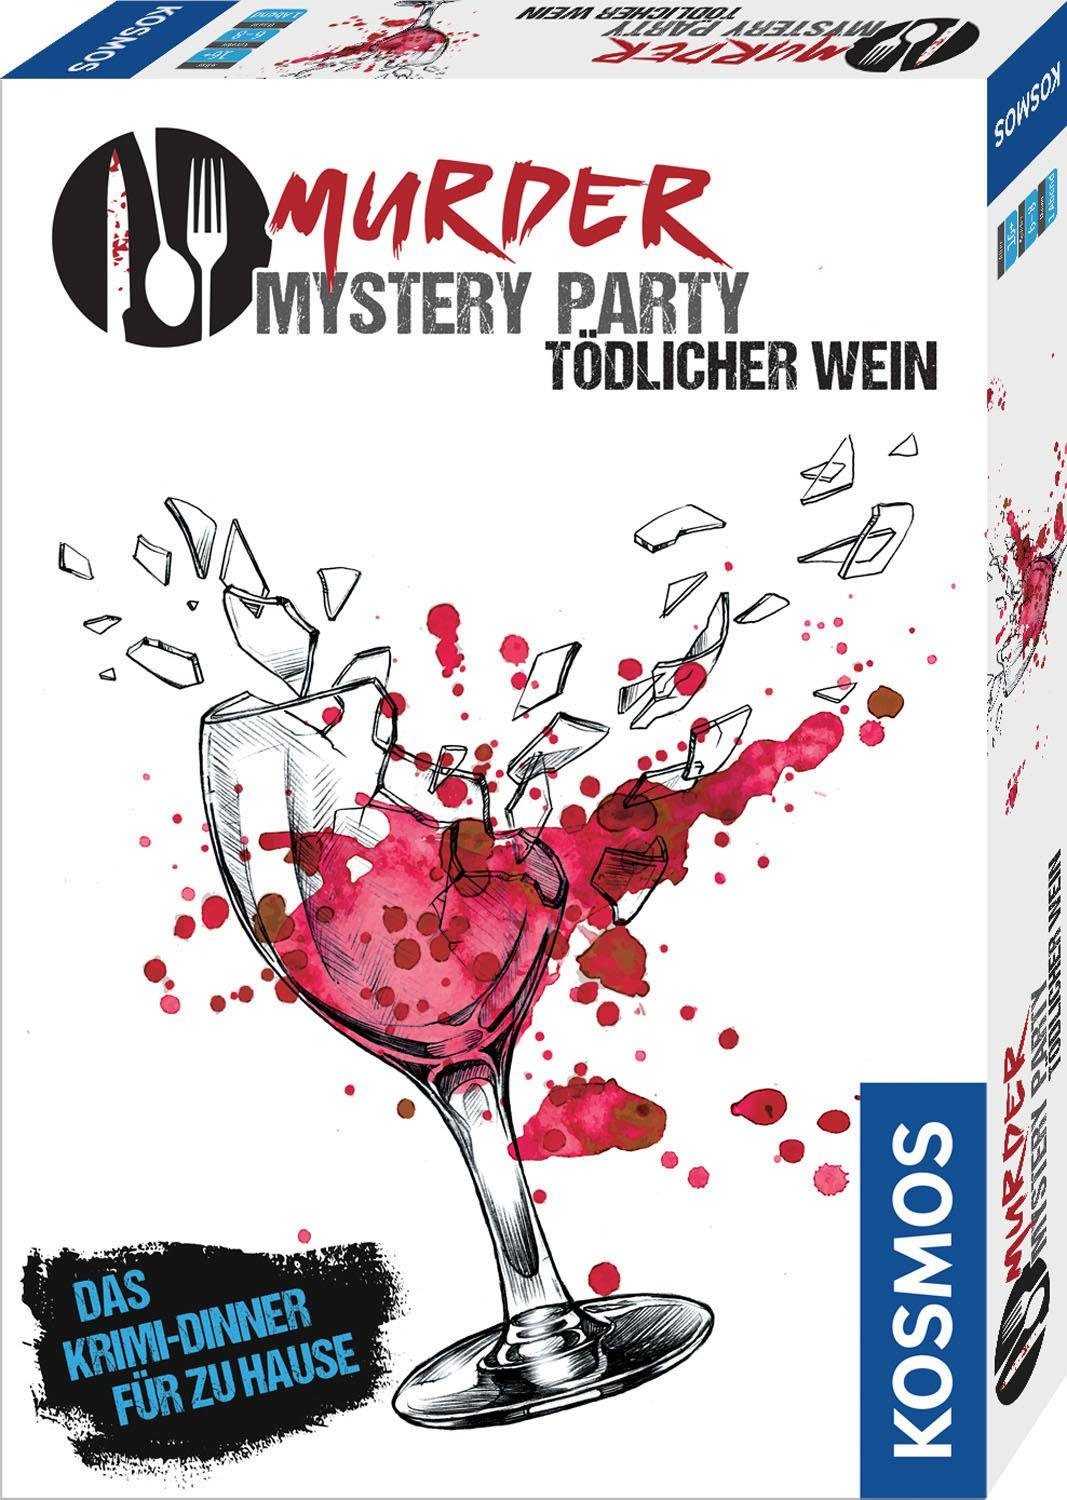 Tödlicher Wein Kosmos Murder Mystery Spiel, Party -